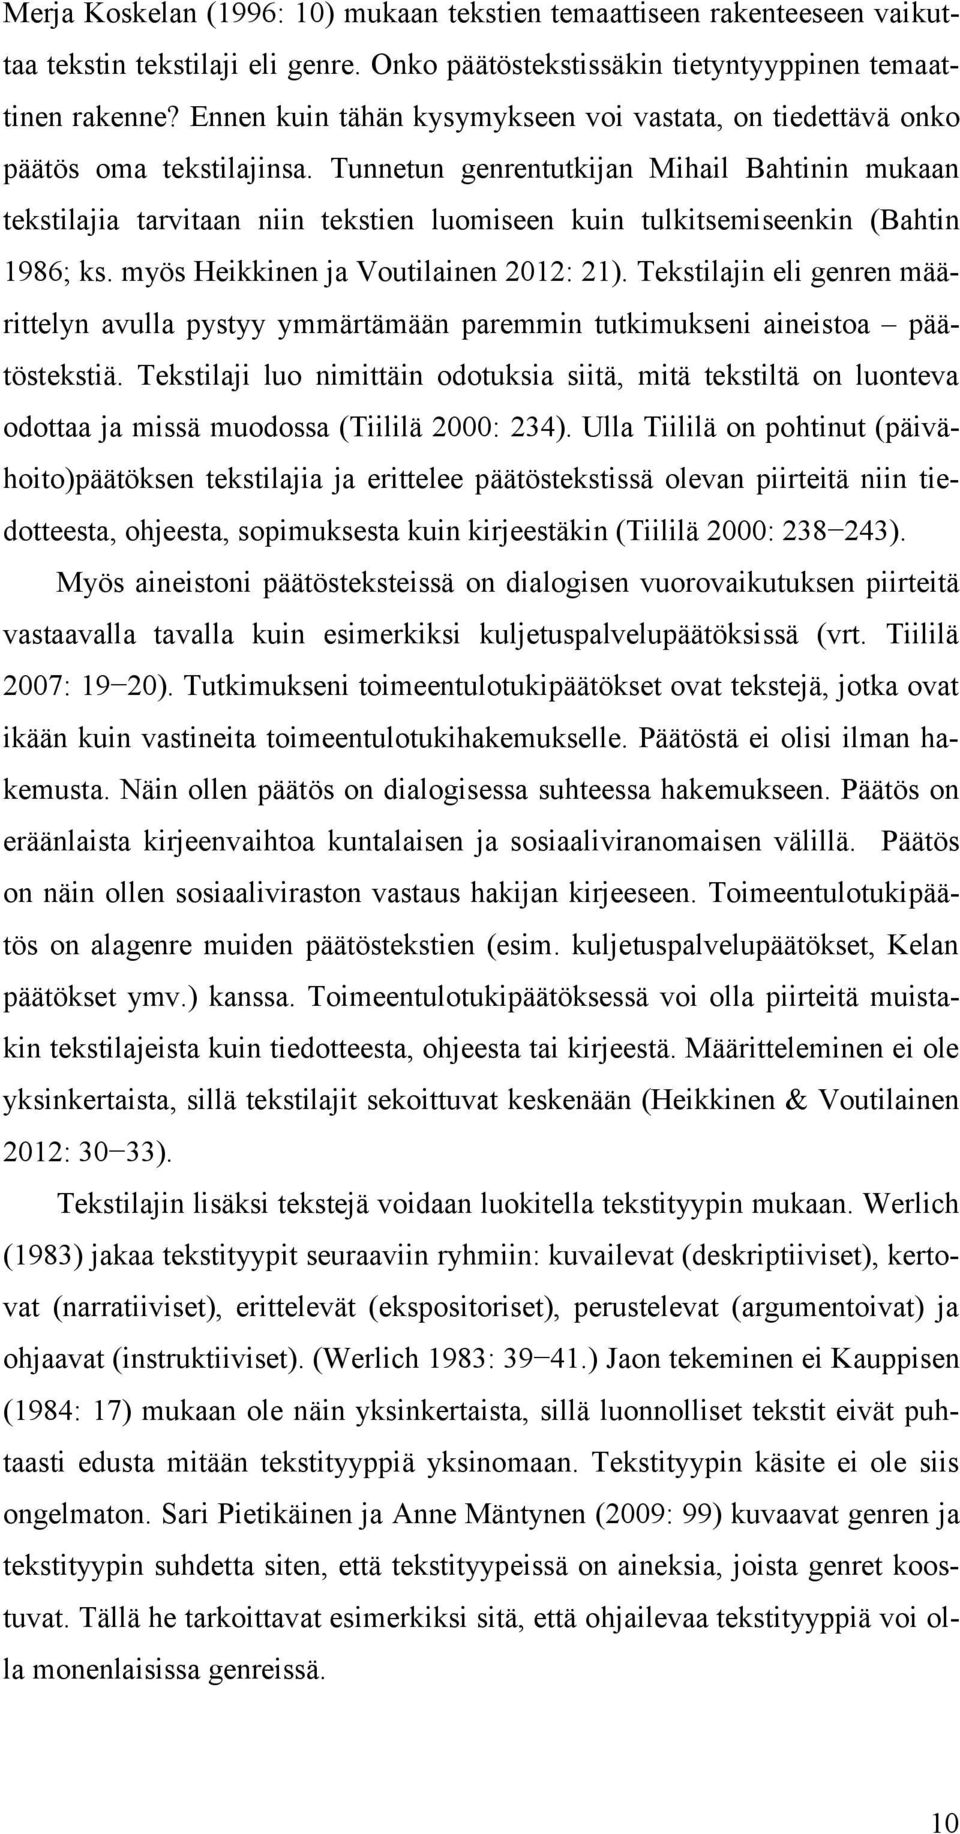 Tunnetun genrentutkijan Mihail Bahtinin mukaan tekstilajia tarvitaan niin tekstien luomiseen kuin tulkitsemiseenkin (Bahtin 1986; ks. myös Heikkinen ja Voutilainen 2012: 21).